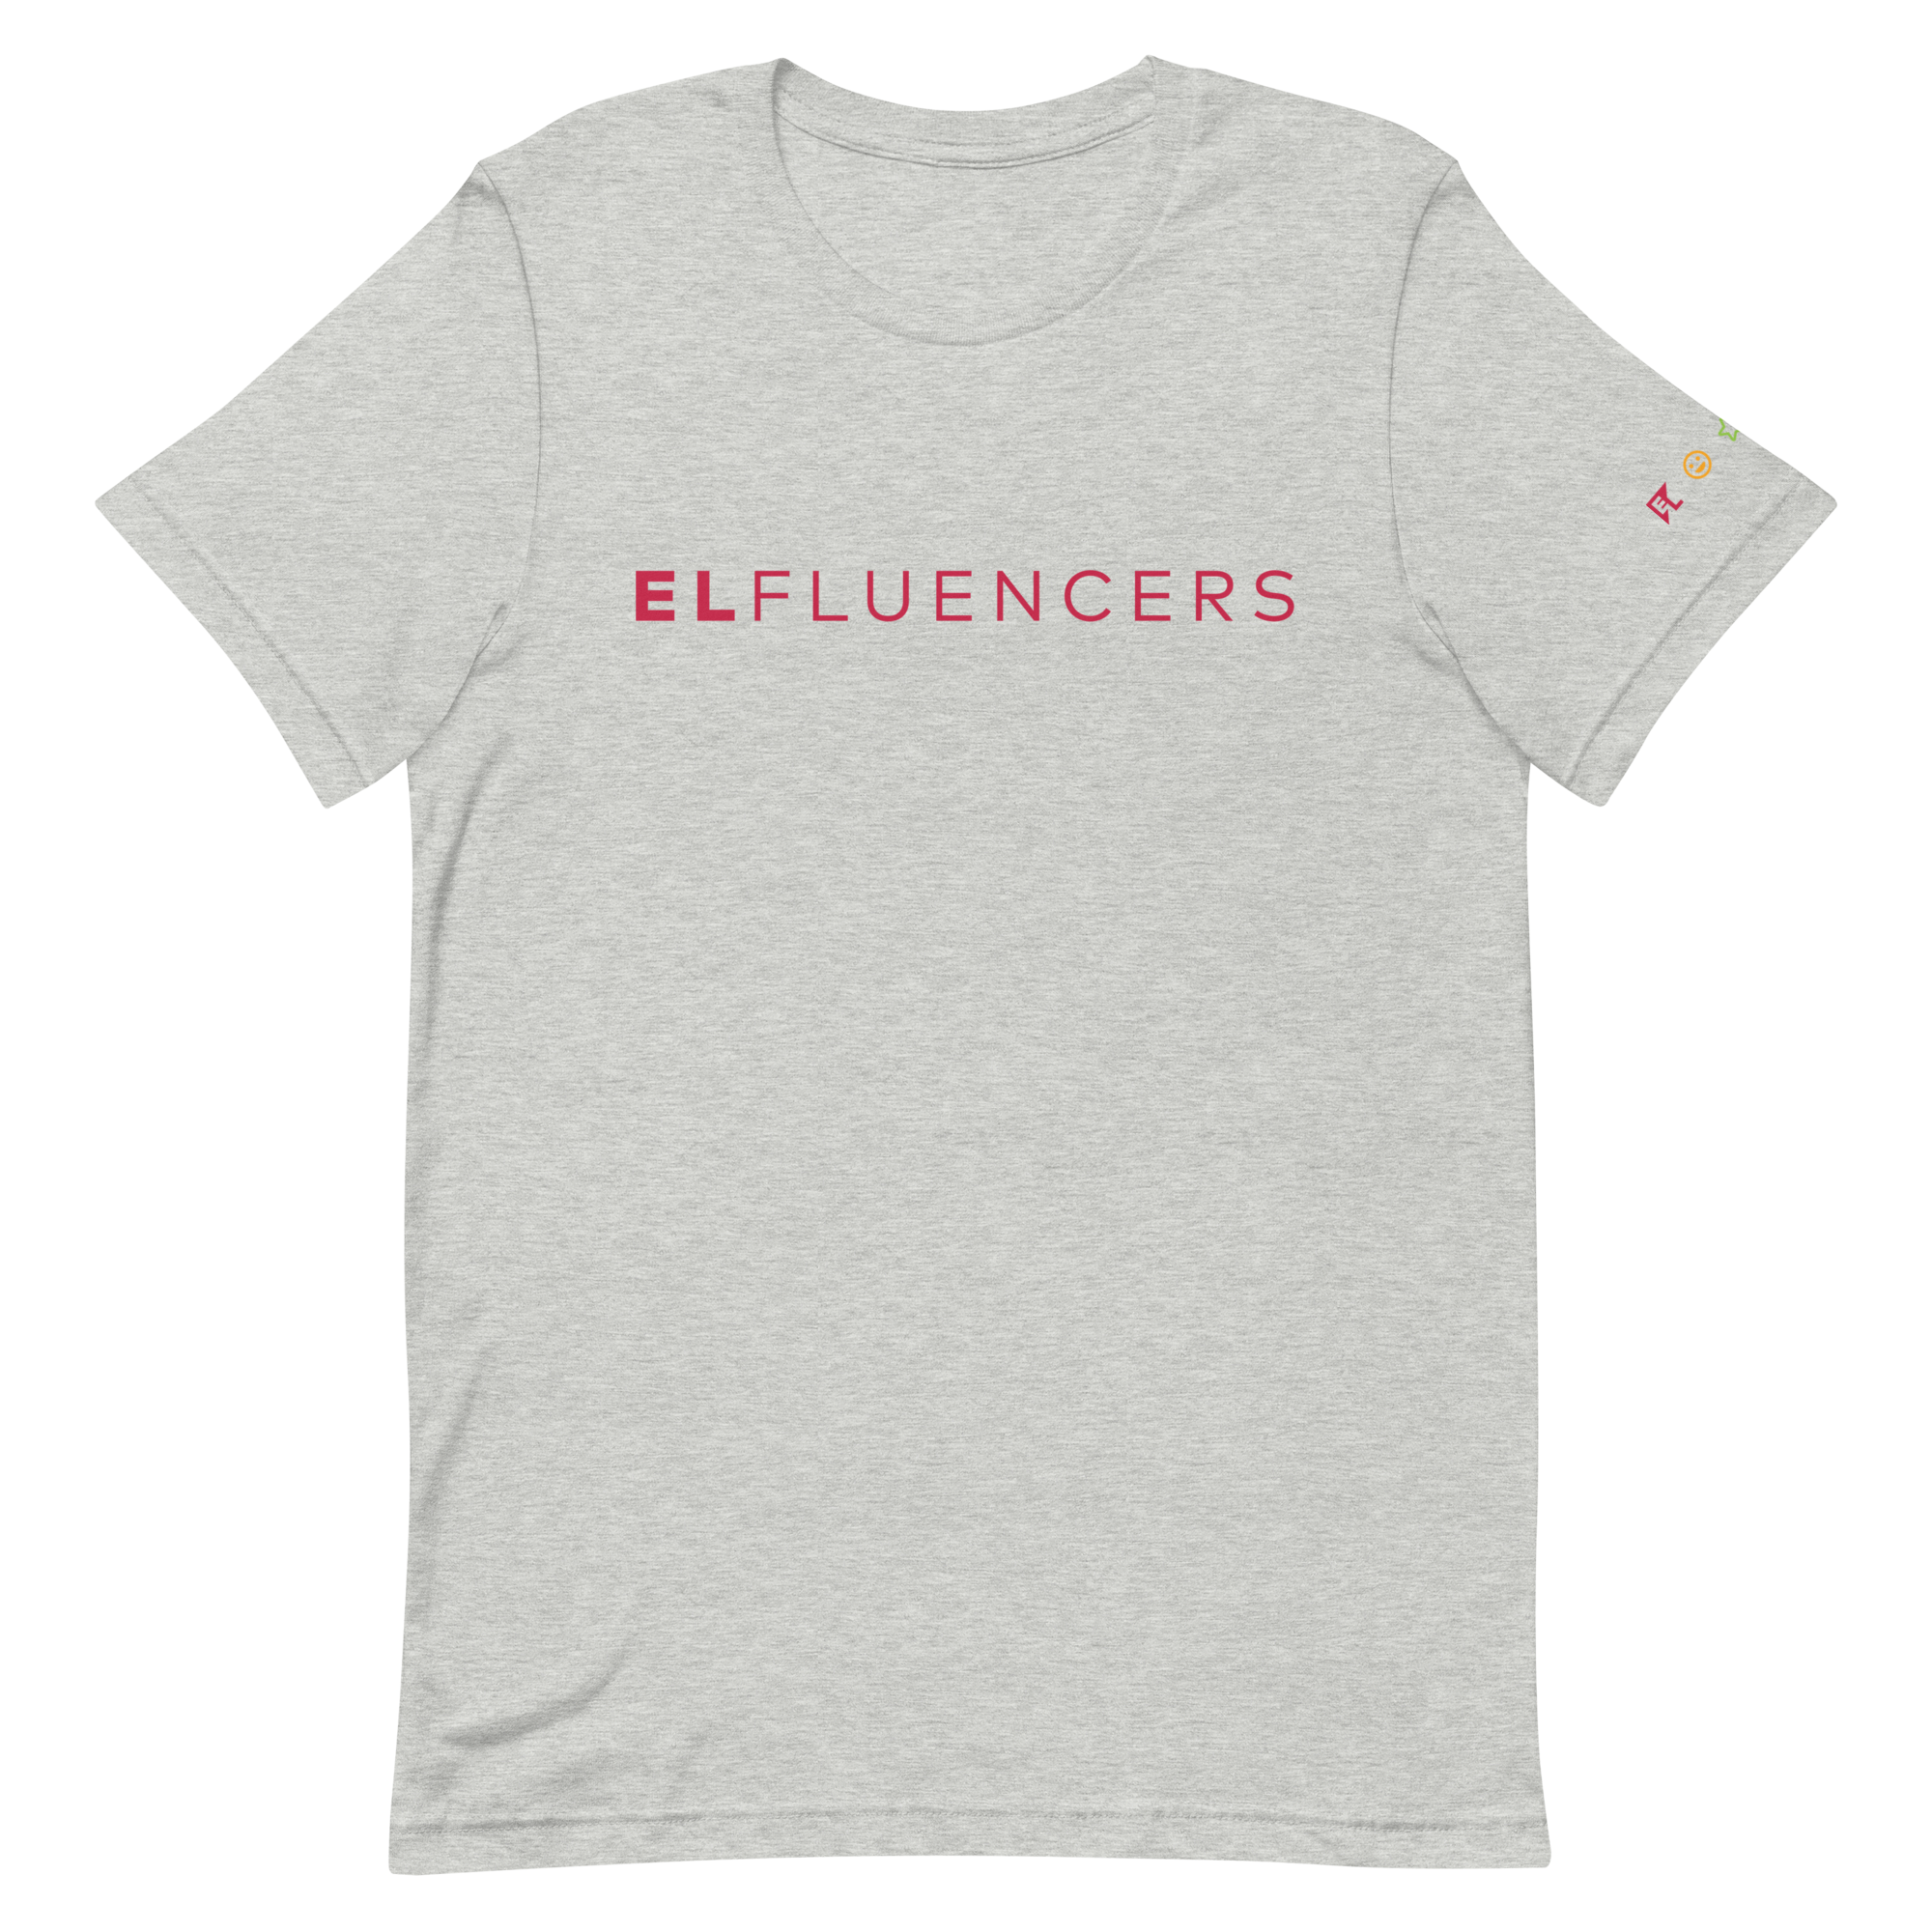 ELfluencers unisex t-shirt